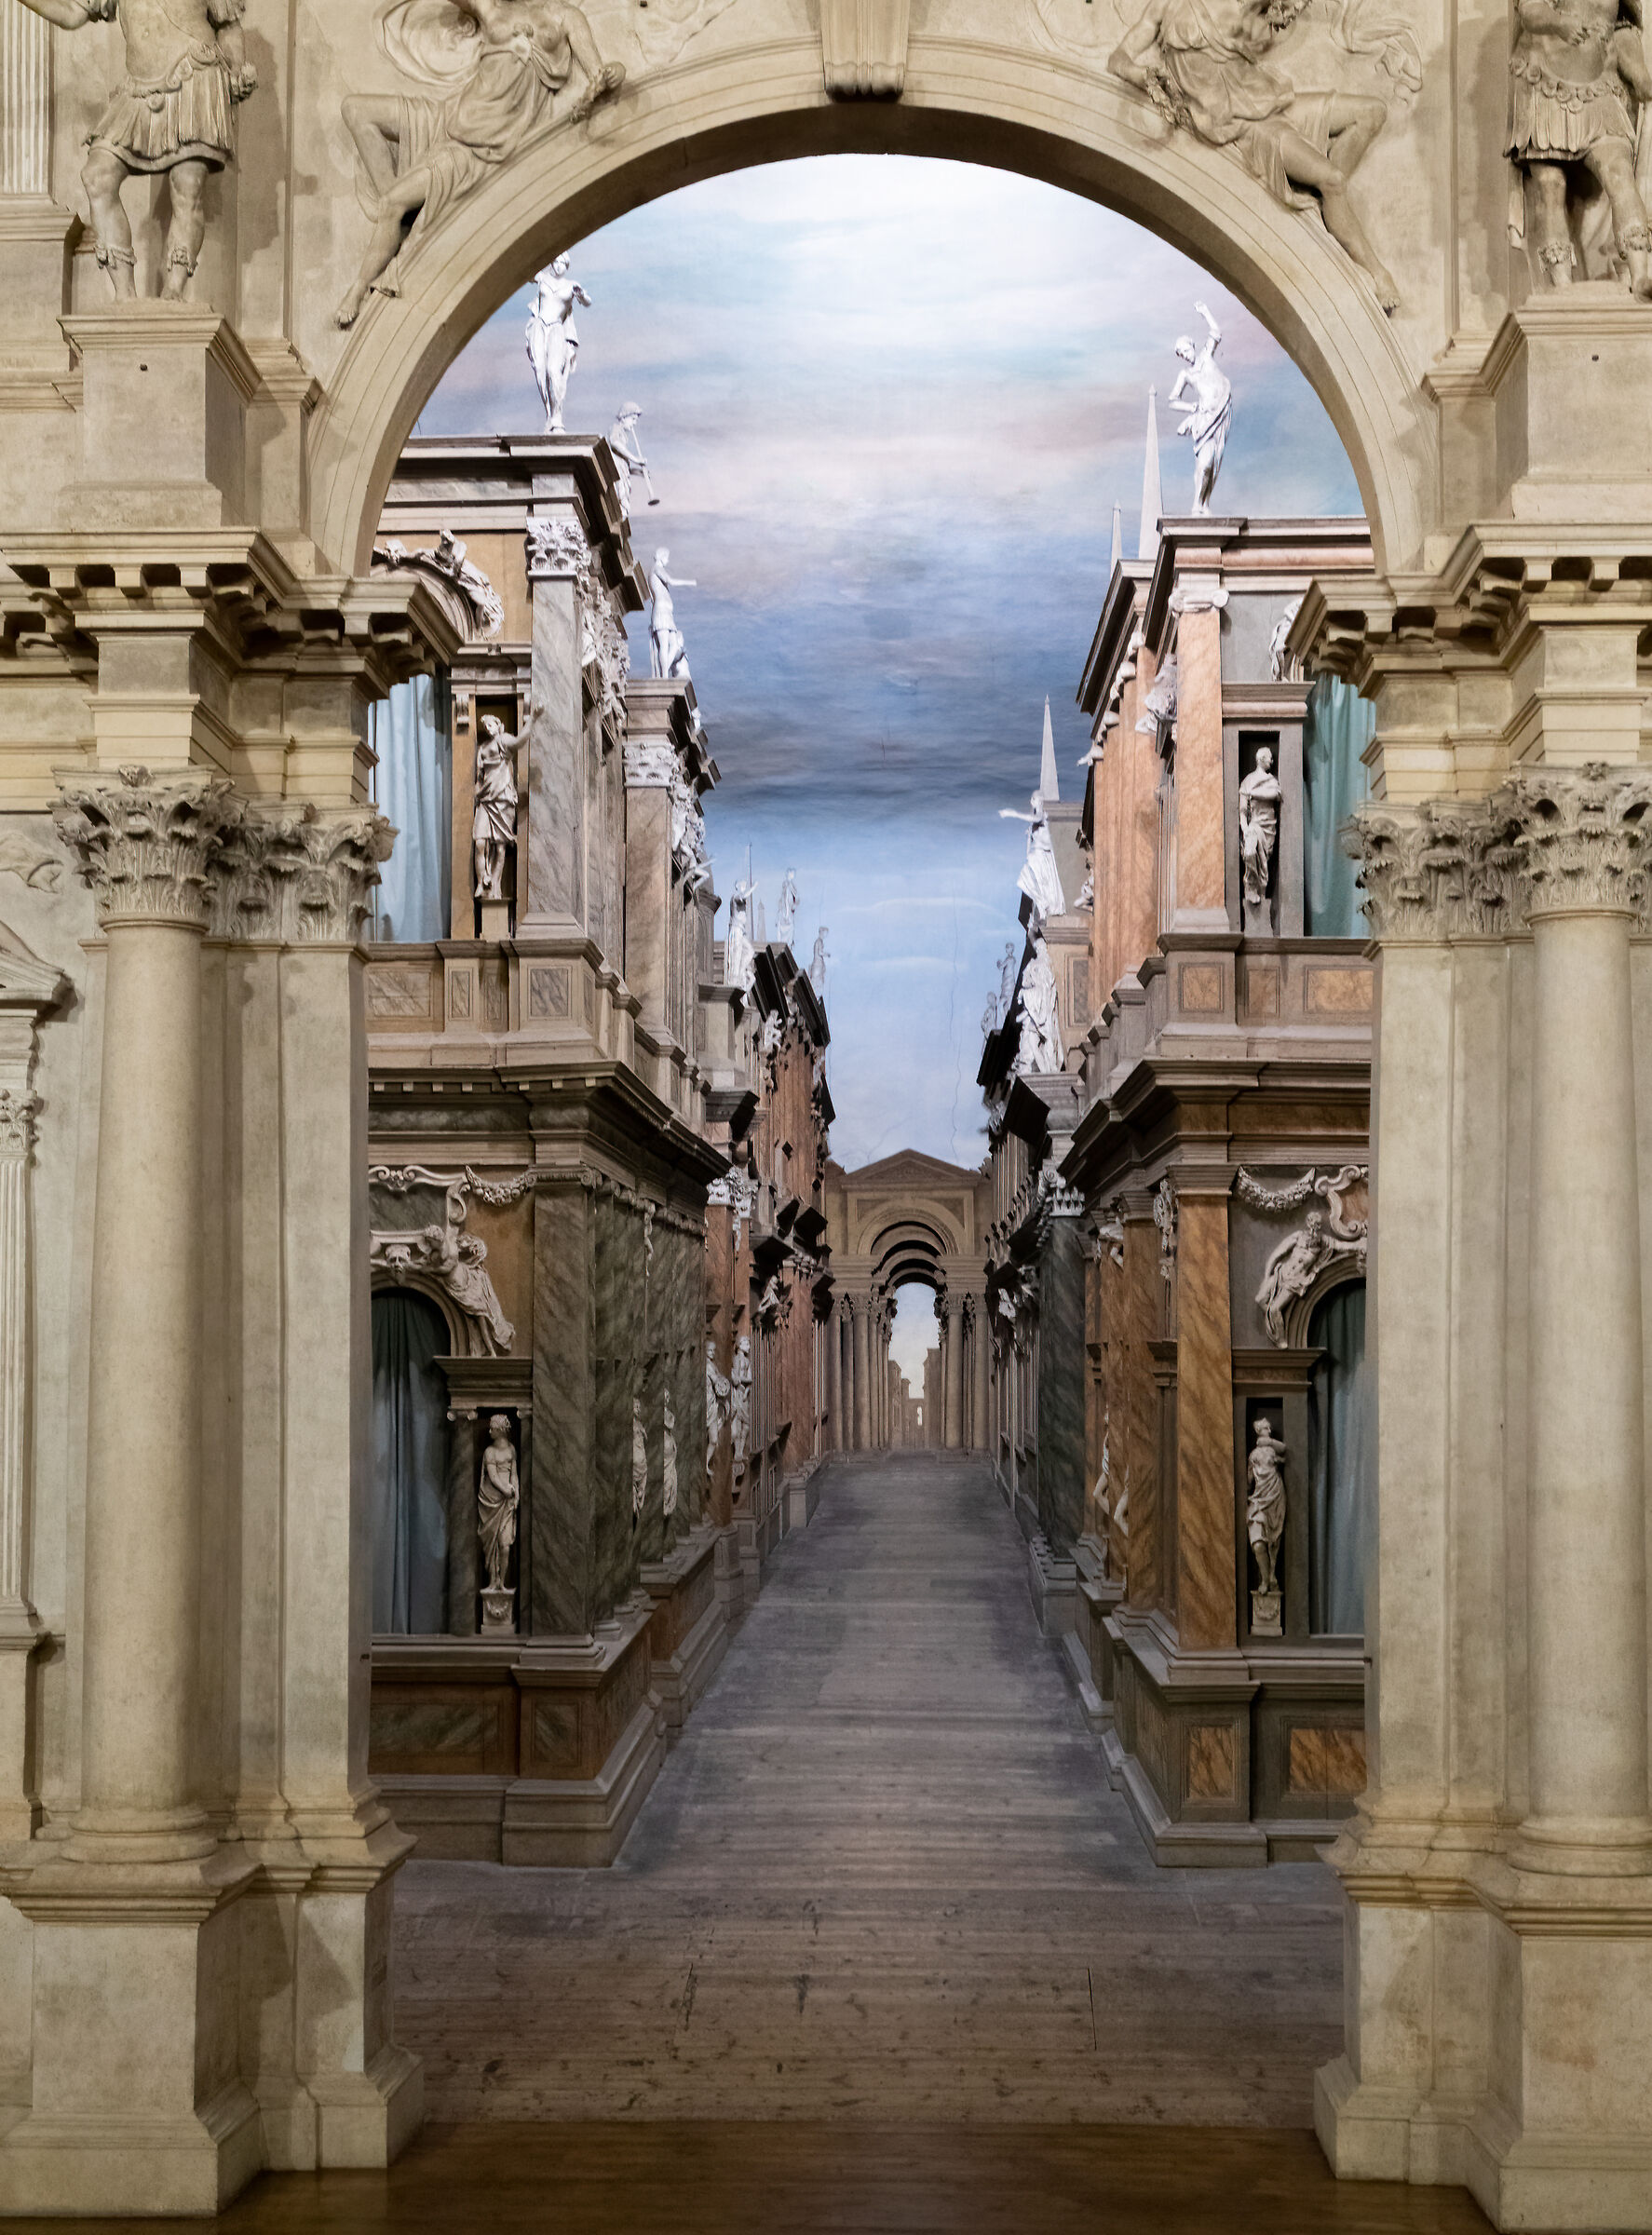 L'artistica illusione di Palladio...